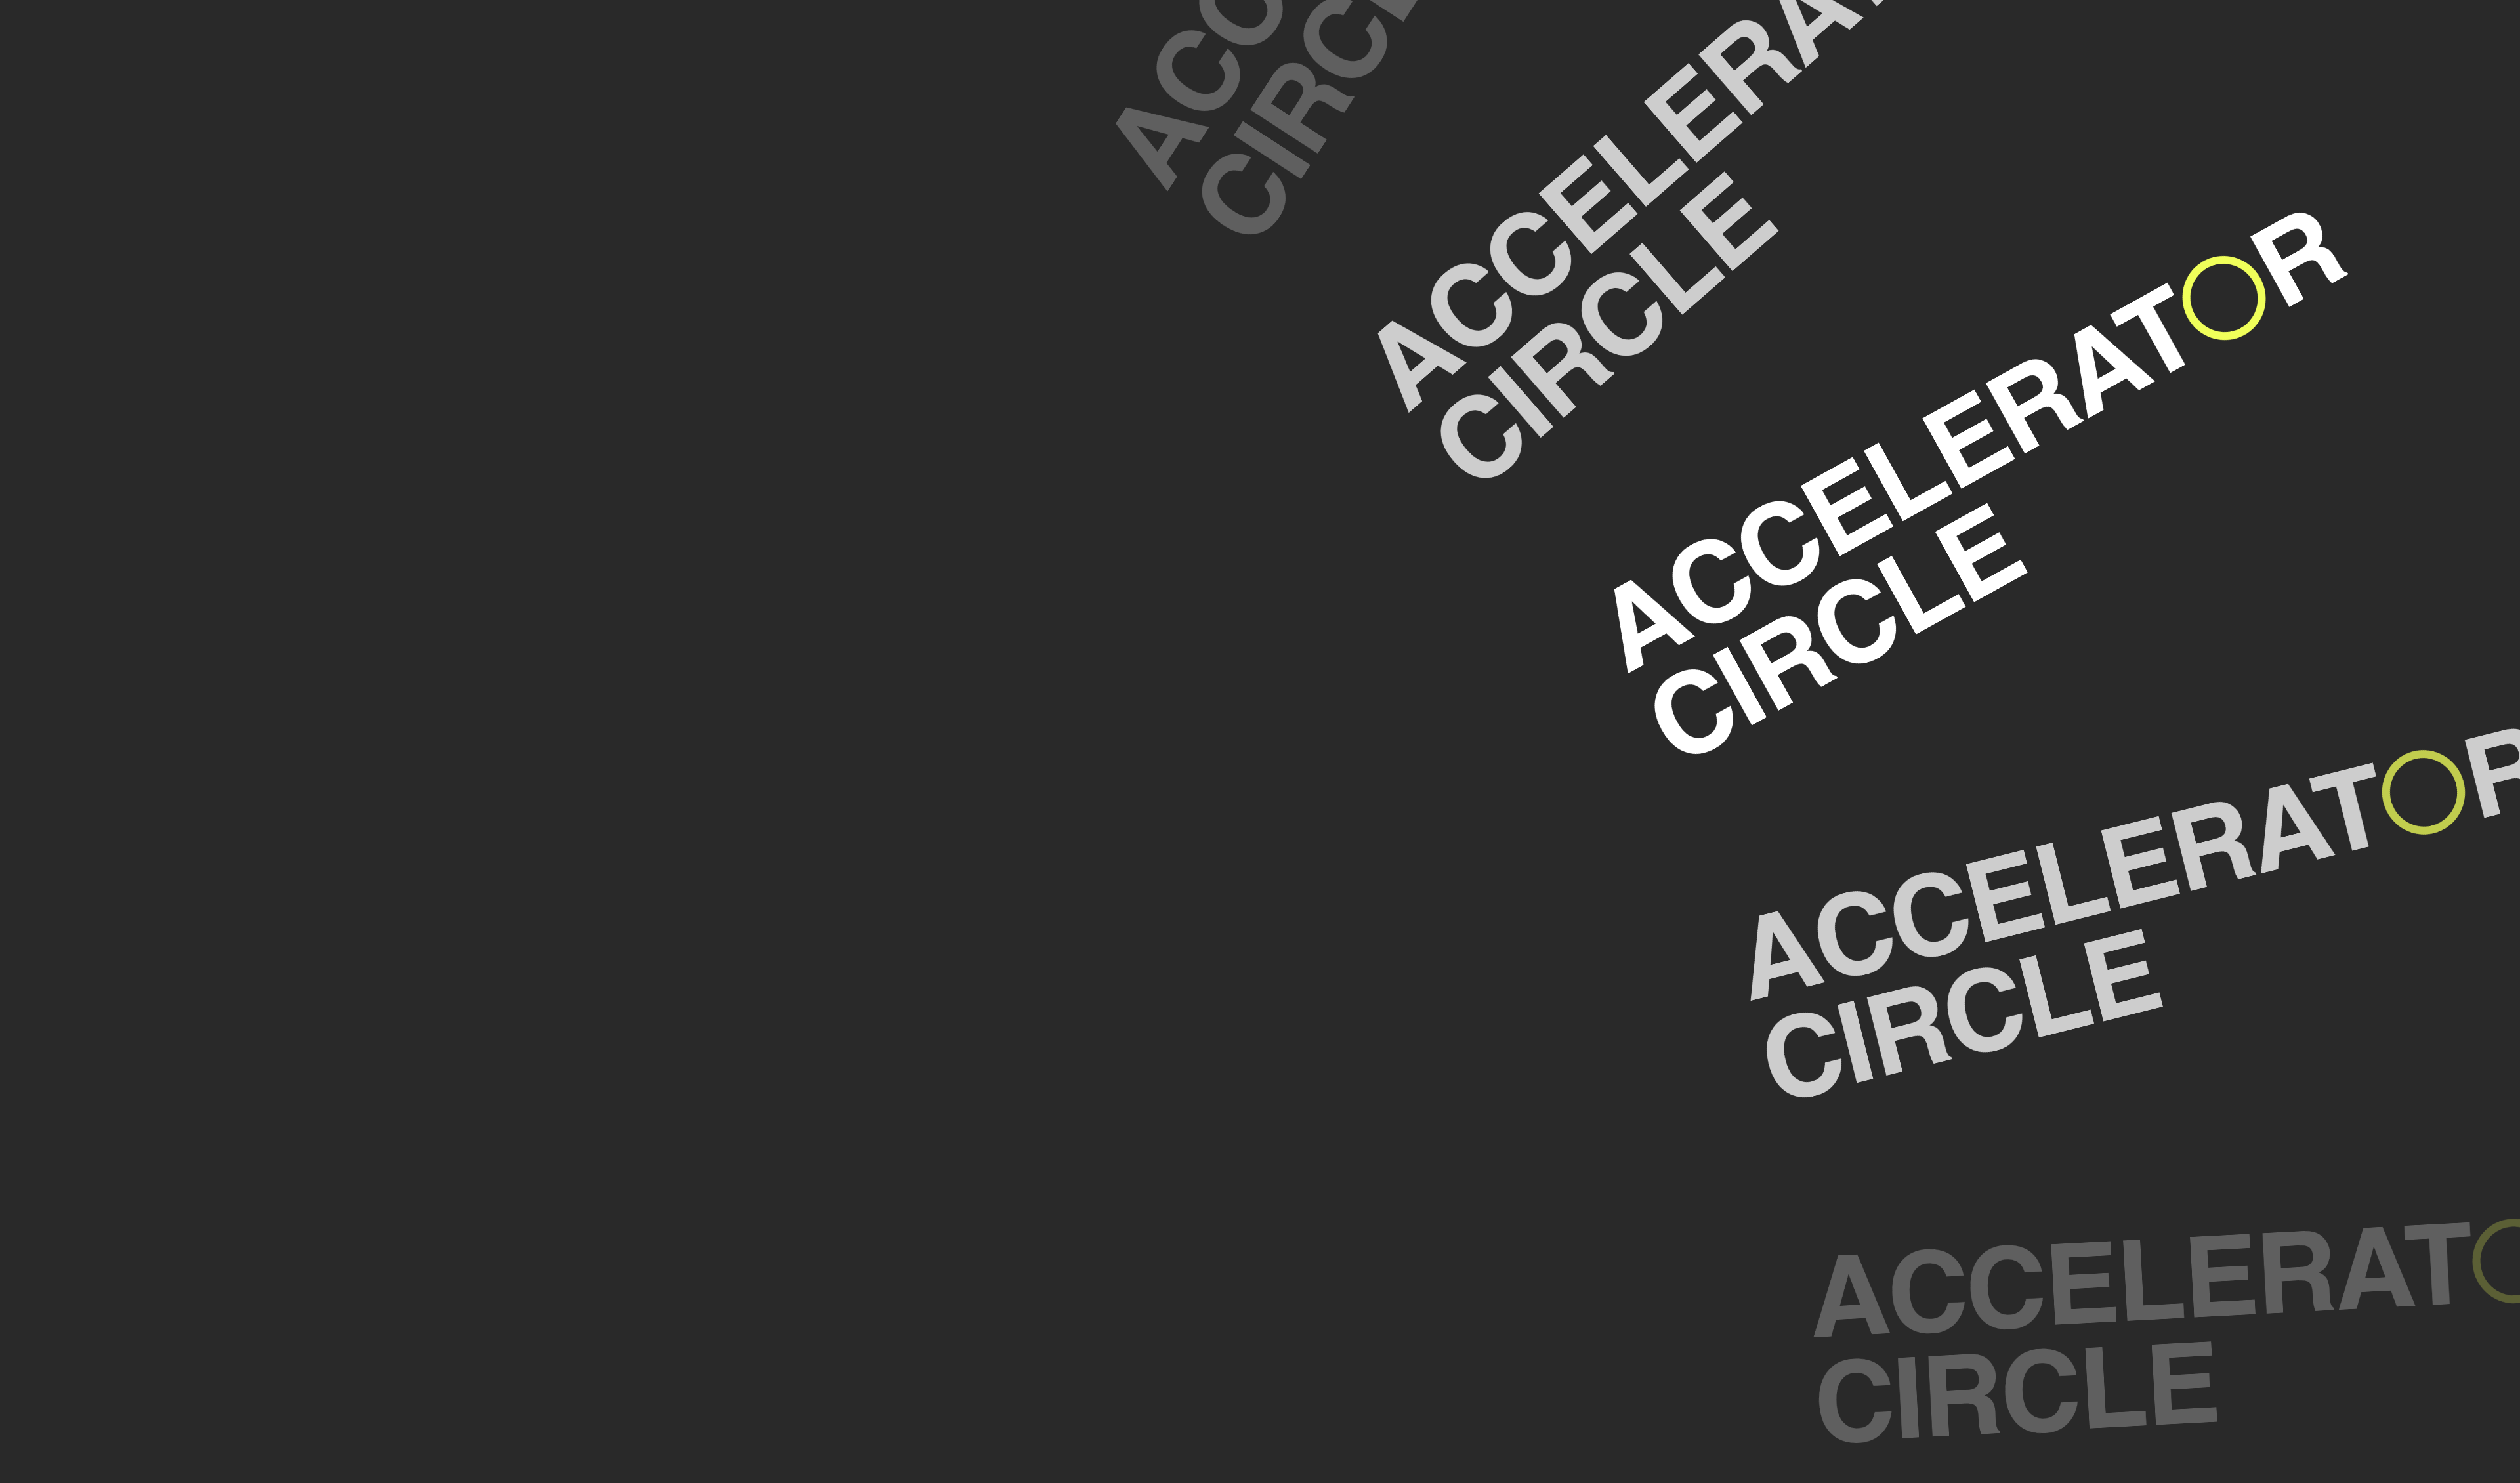 Accelerator Circle